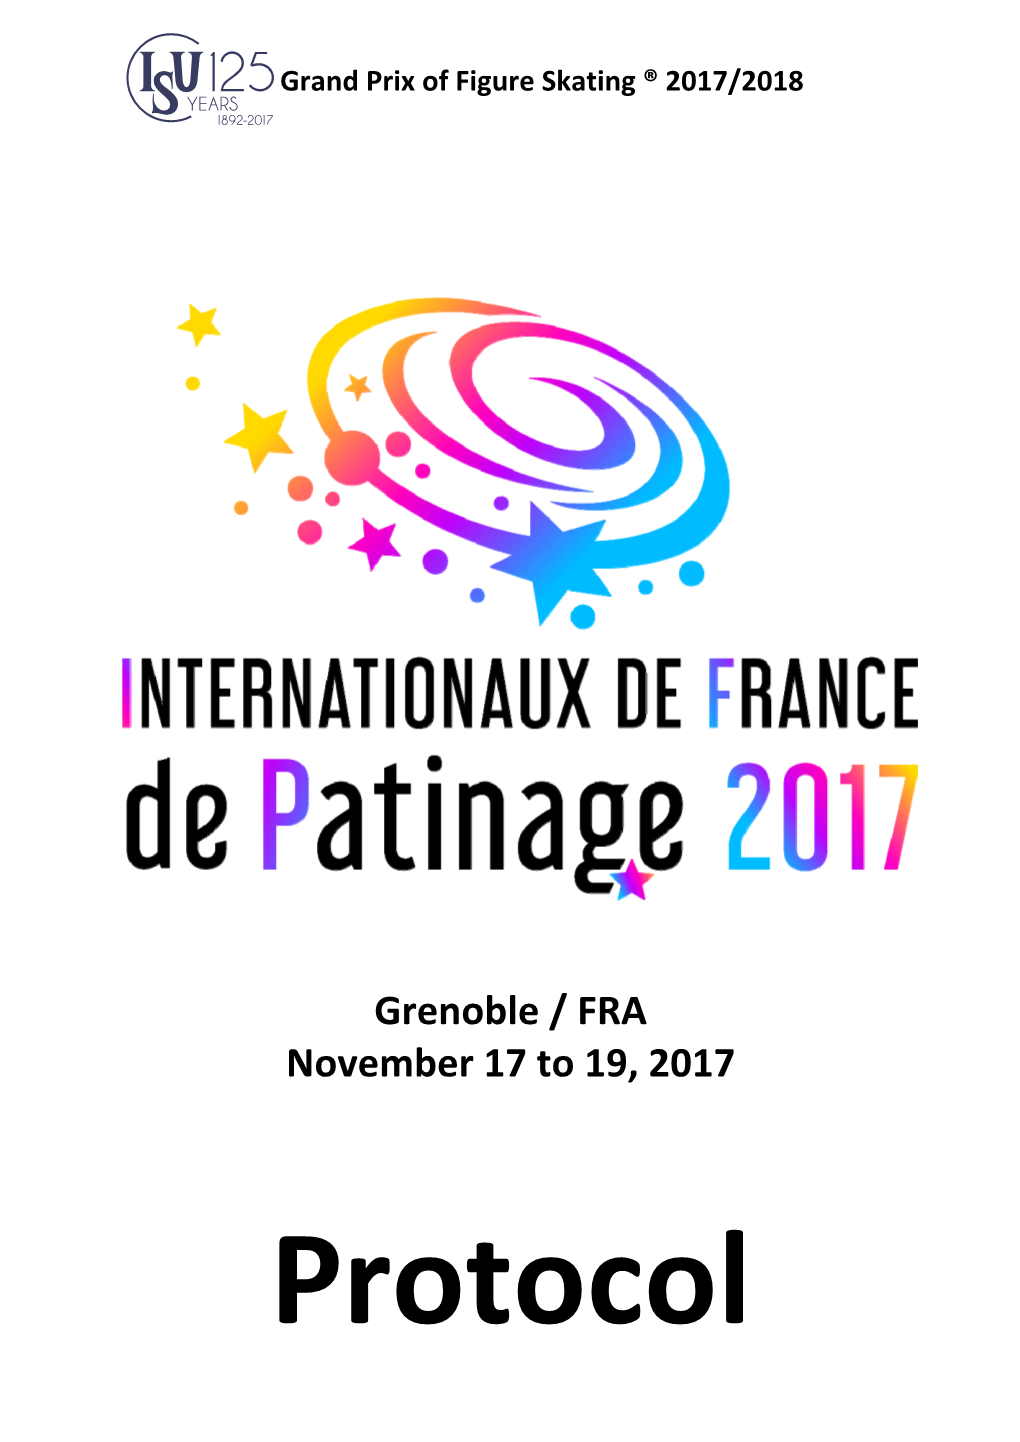 Grenoble / FRA November 17 to 19, 2017